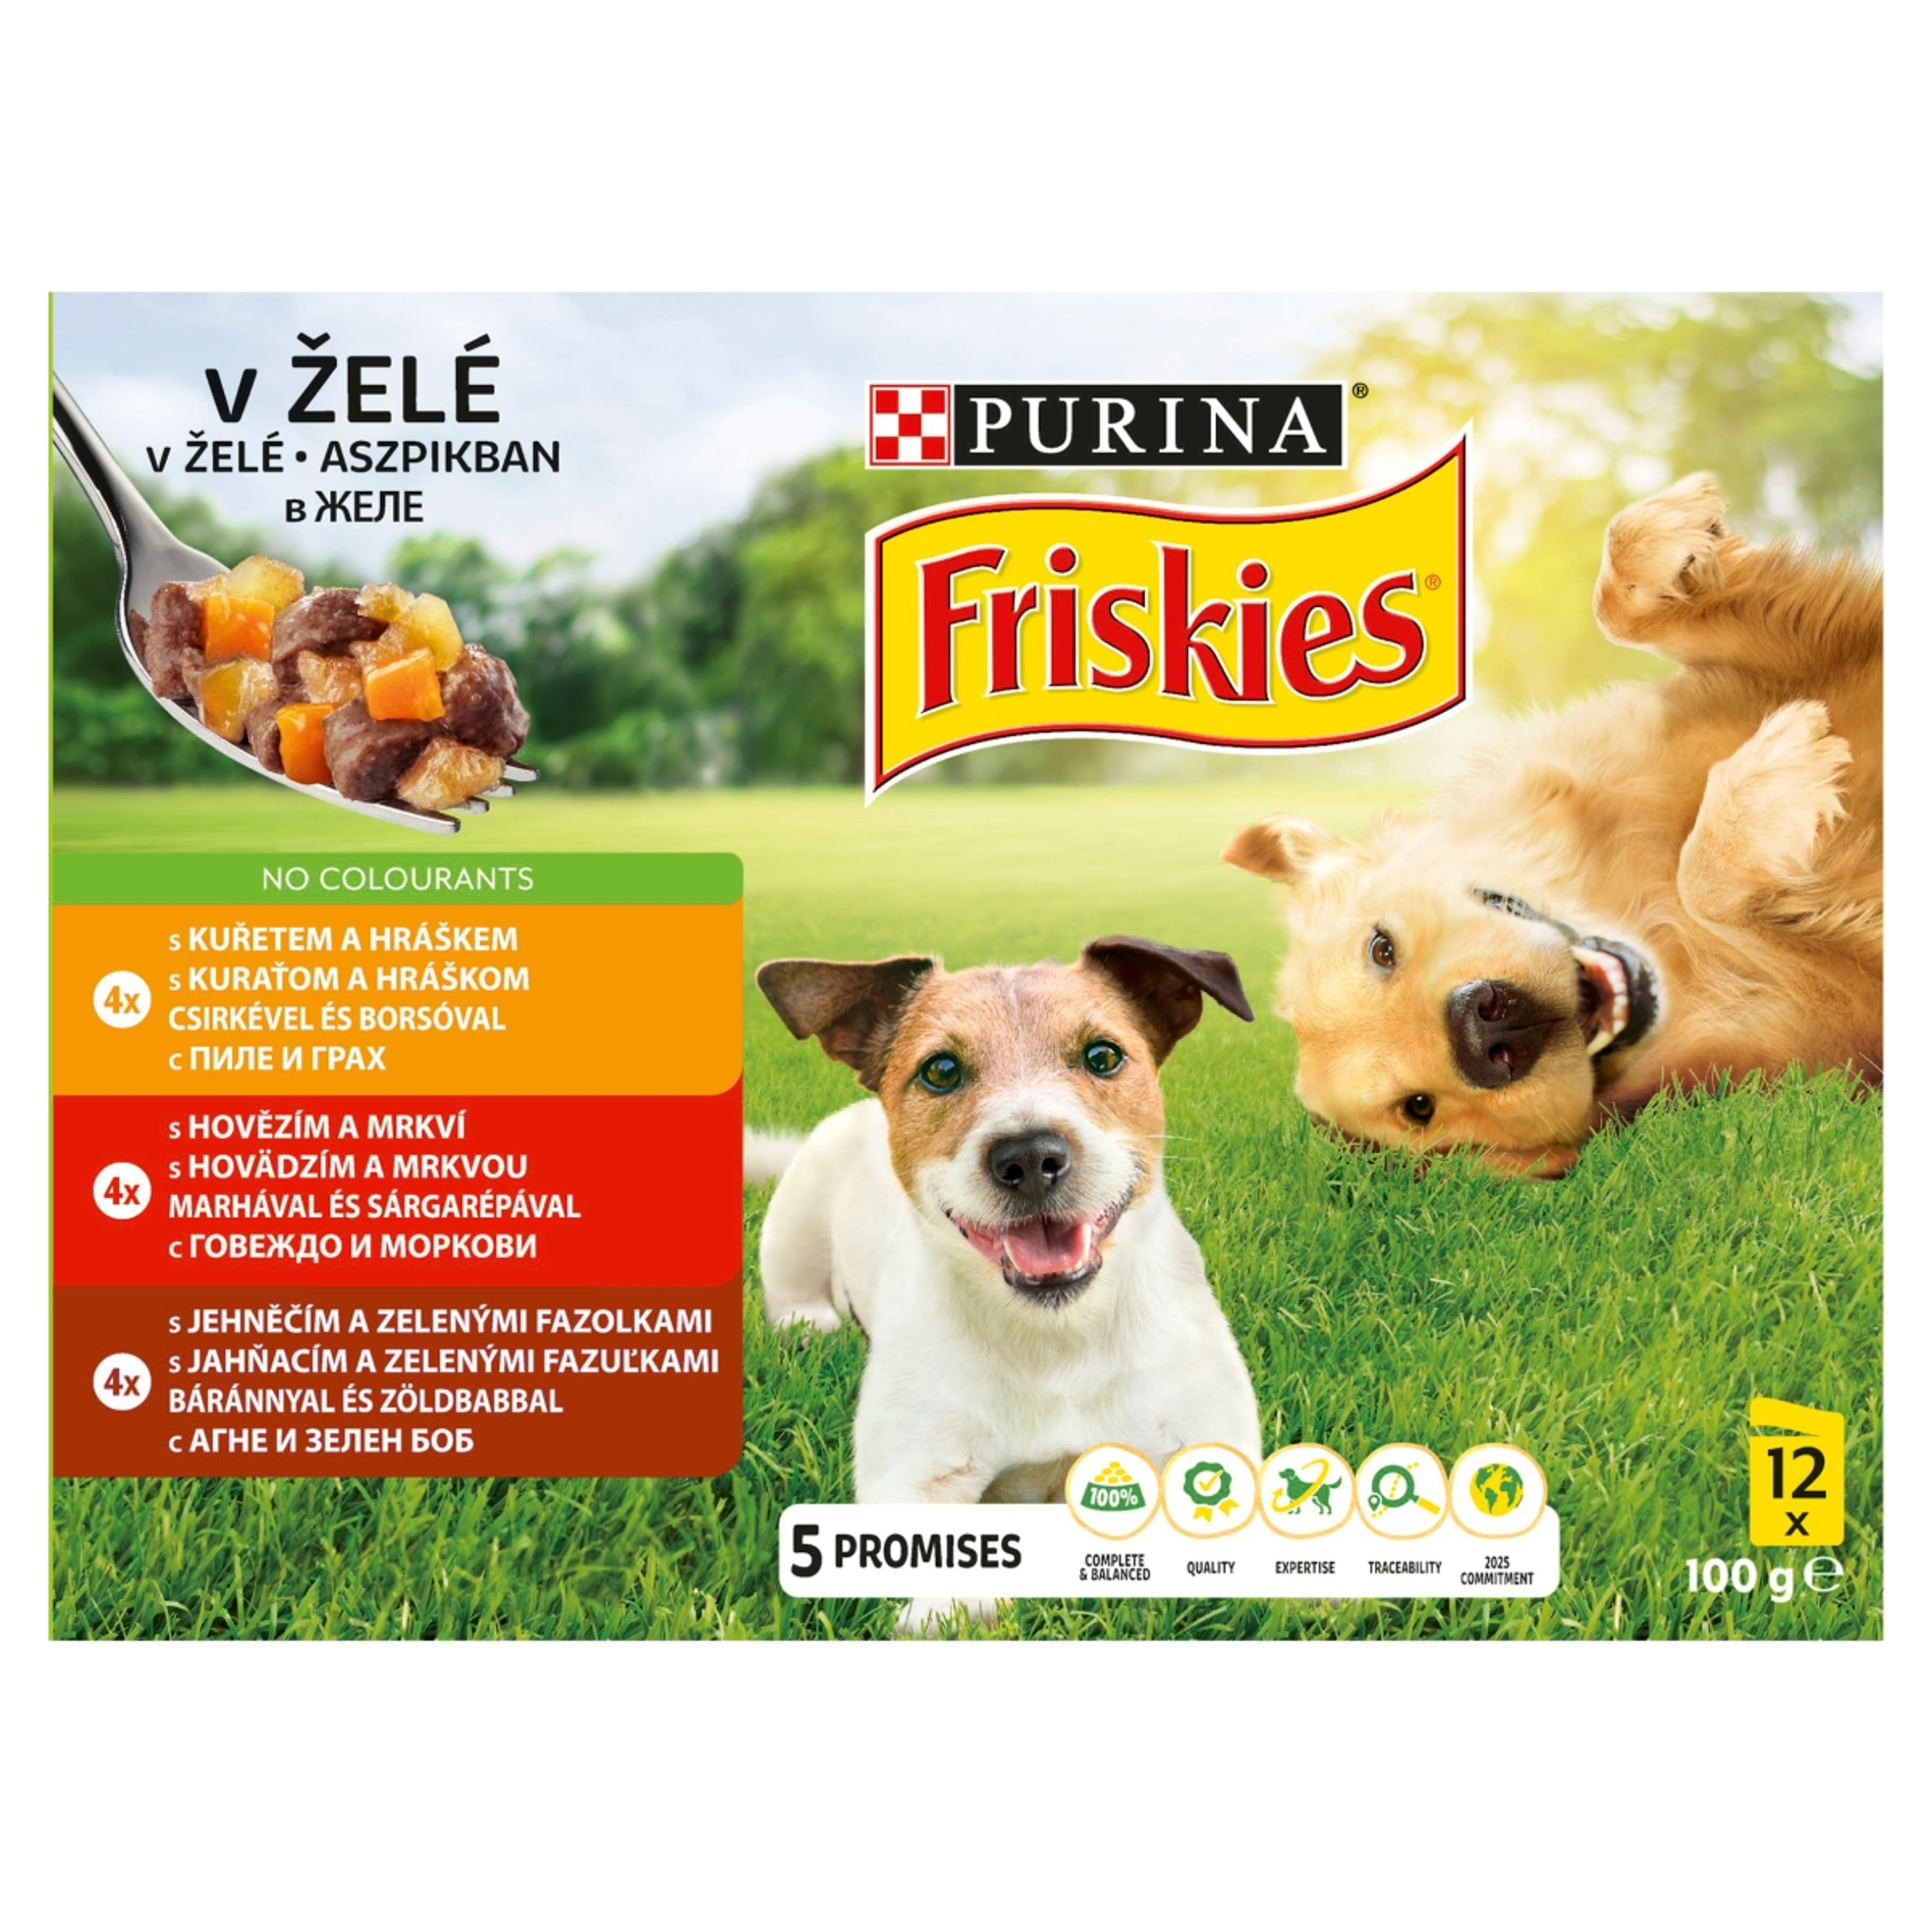 Friskies alutál kutyáknak aszpikos válogatás 12*100 g - 1200 g-1